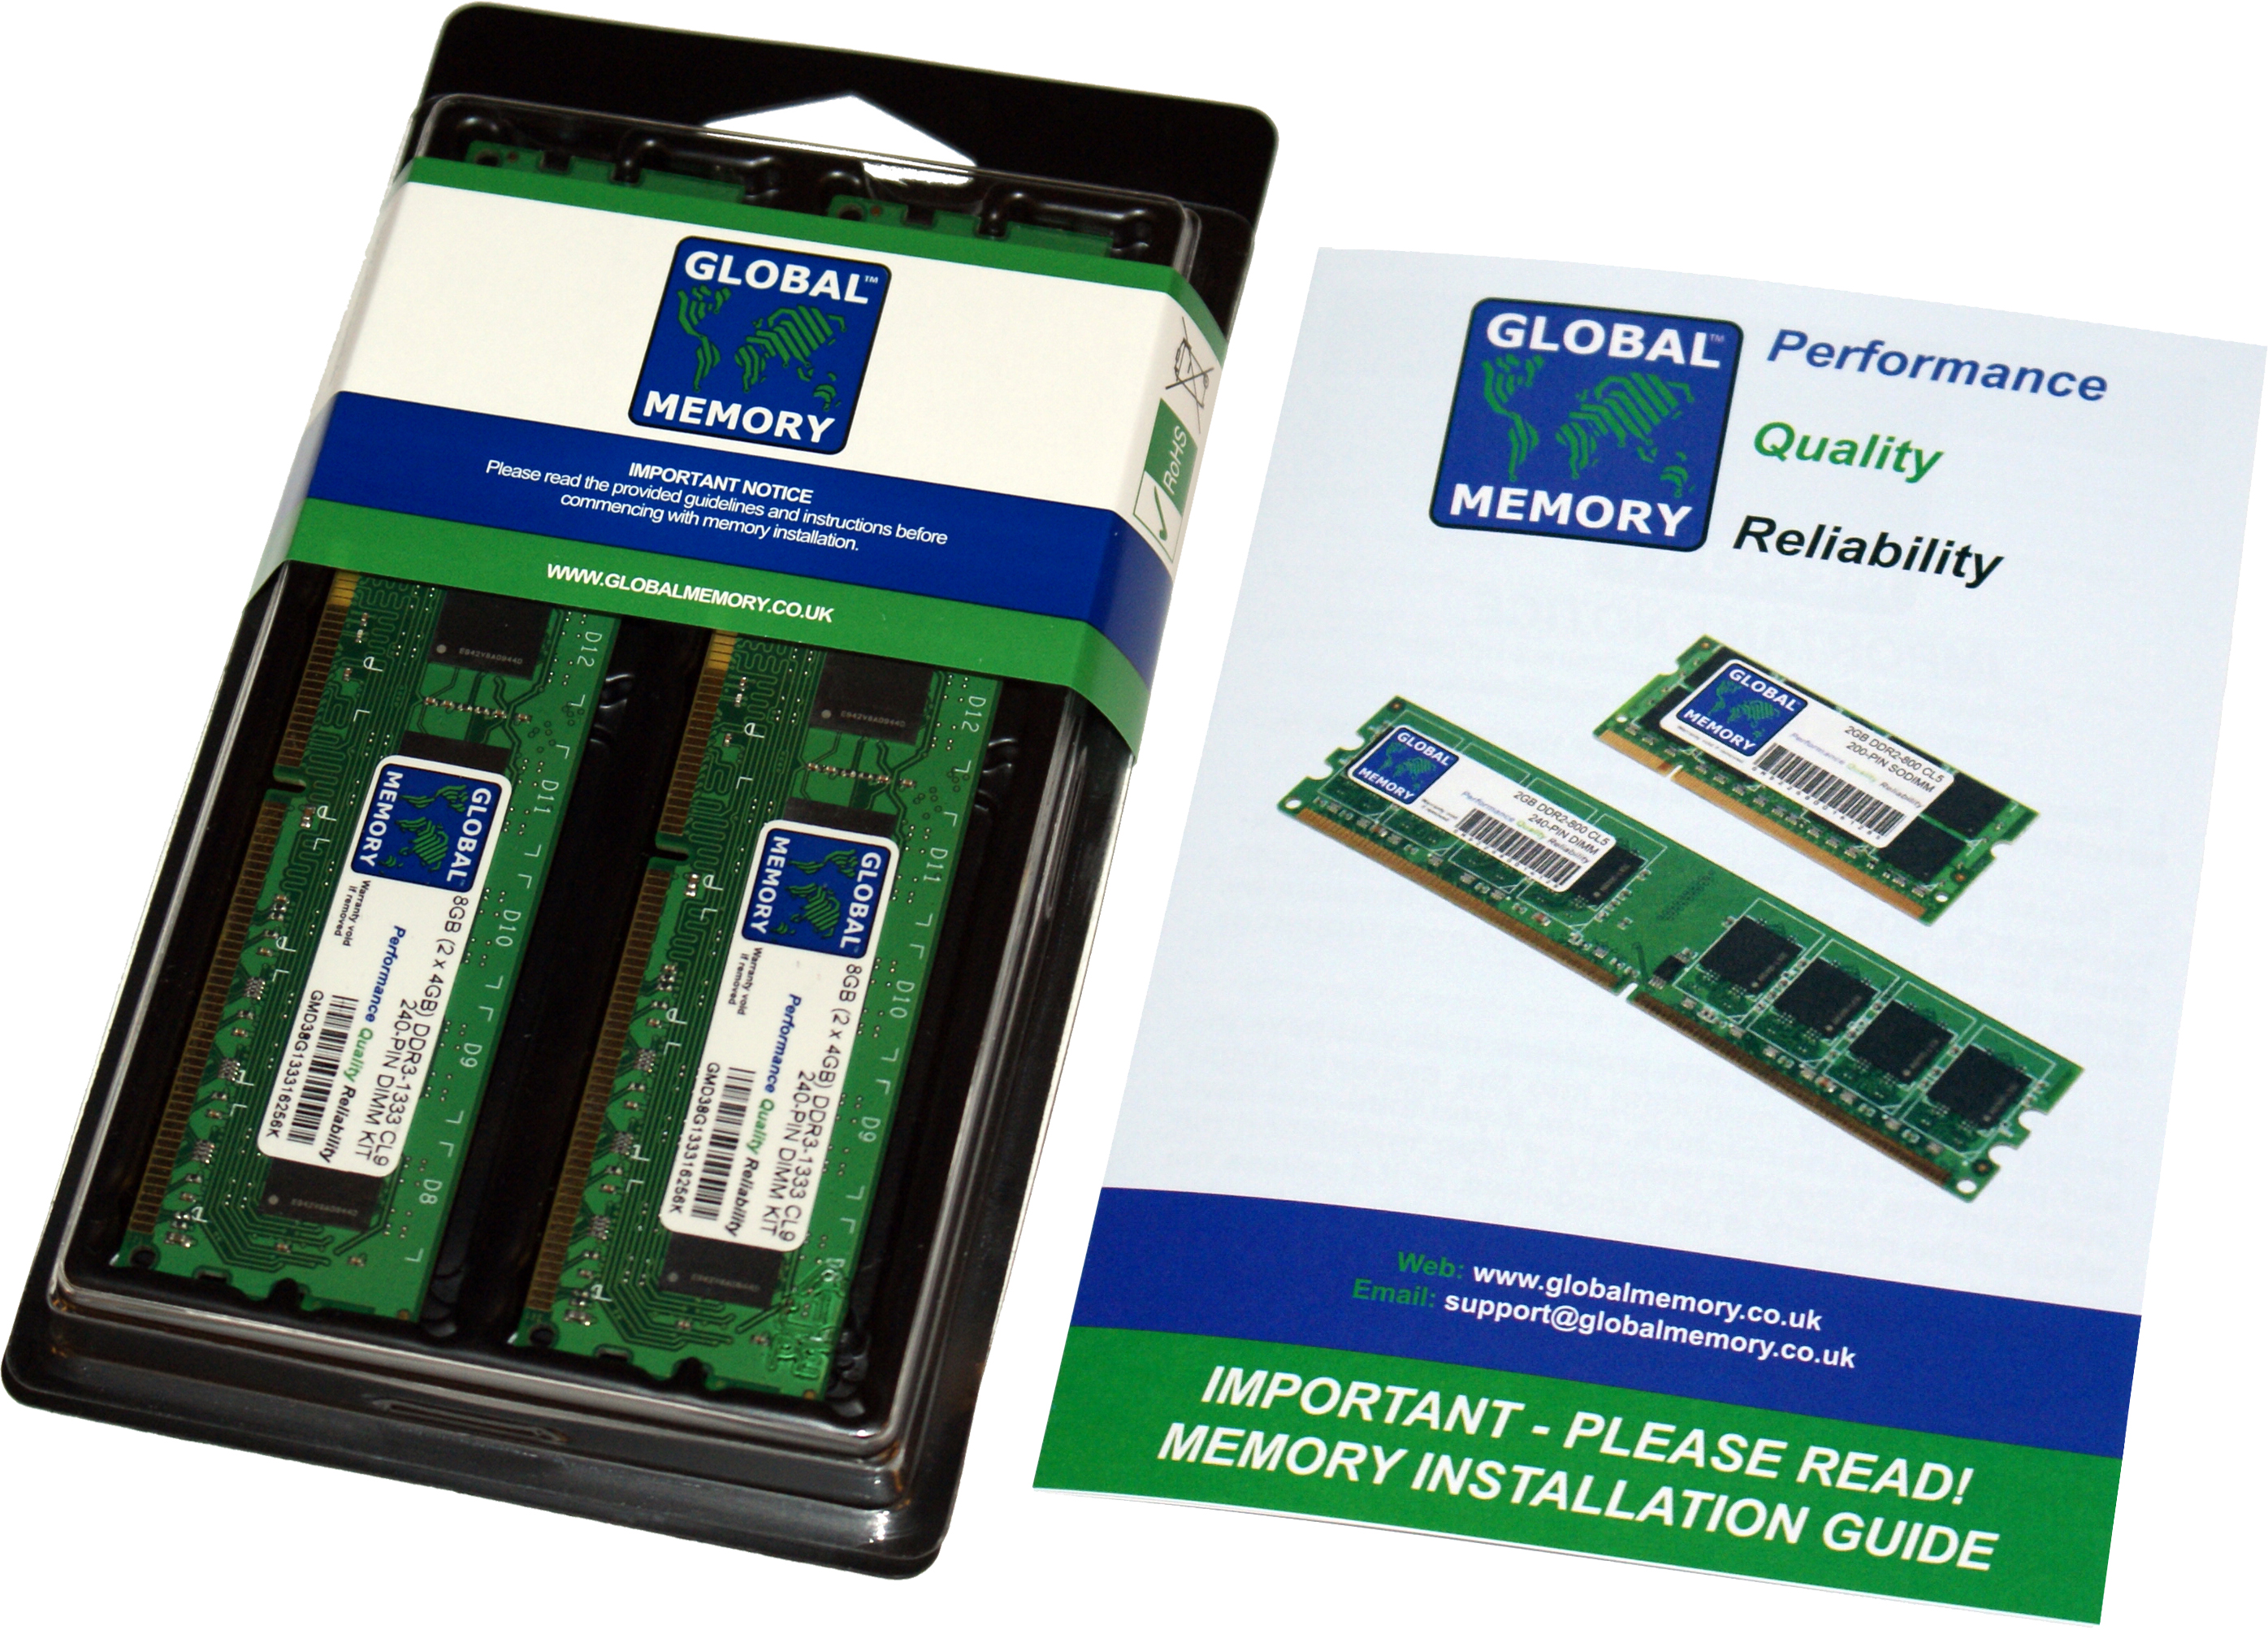 8GB (2 x 4GB) DDR4 2400MHz PC4-19200 288-PIN DIMM MEMORY RAM KIT FOR FUJITSU PC DESKTOPS